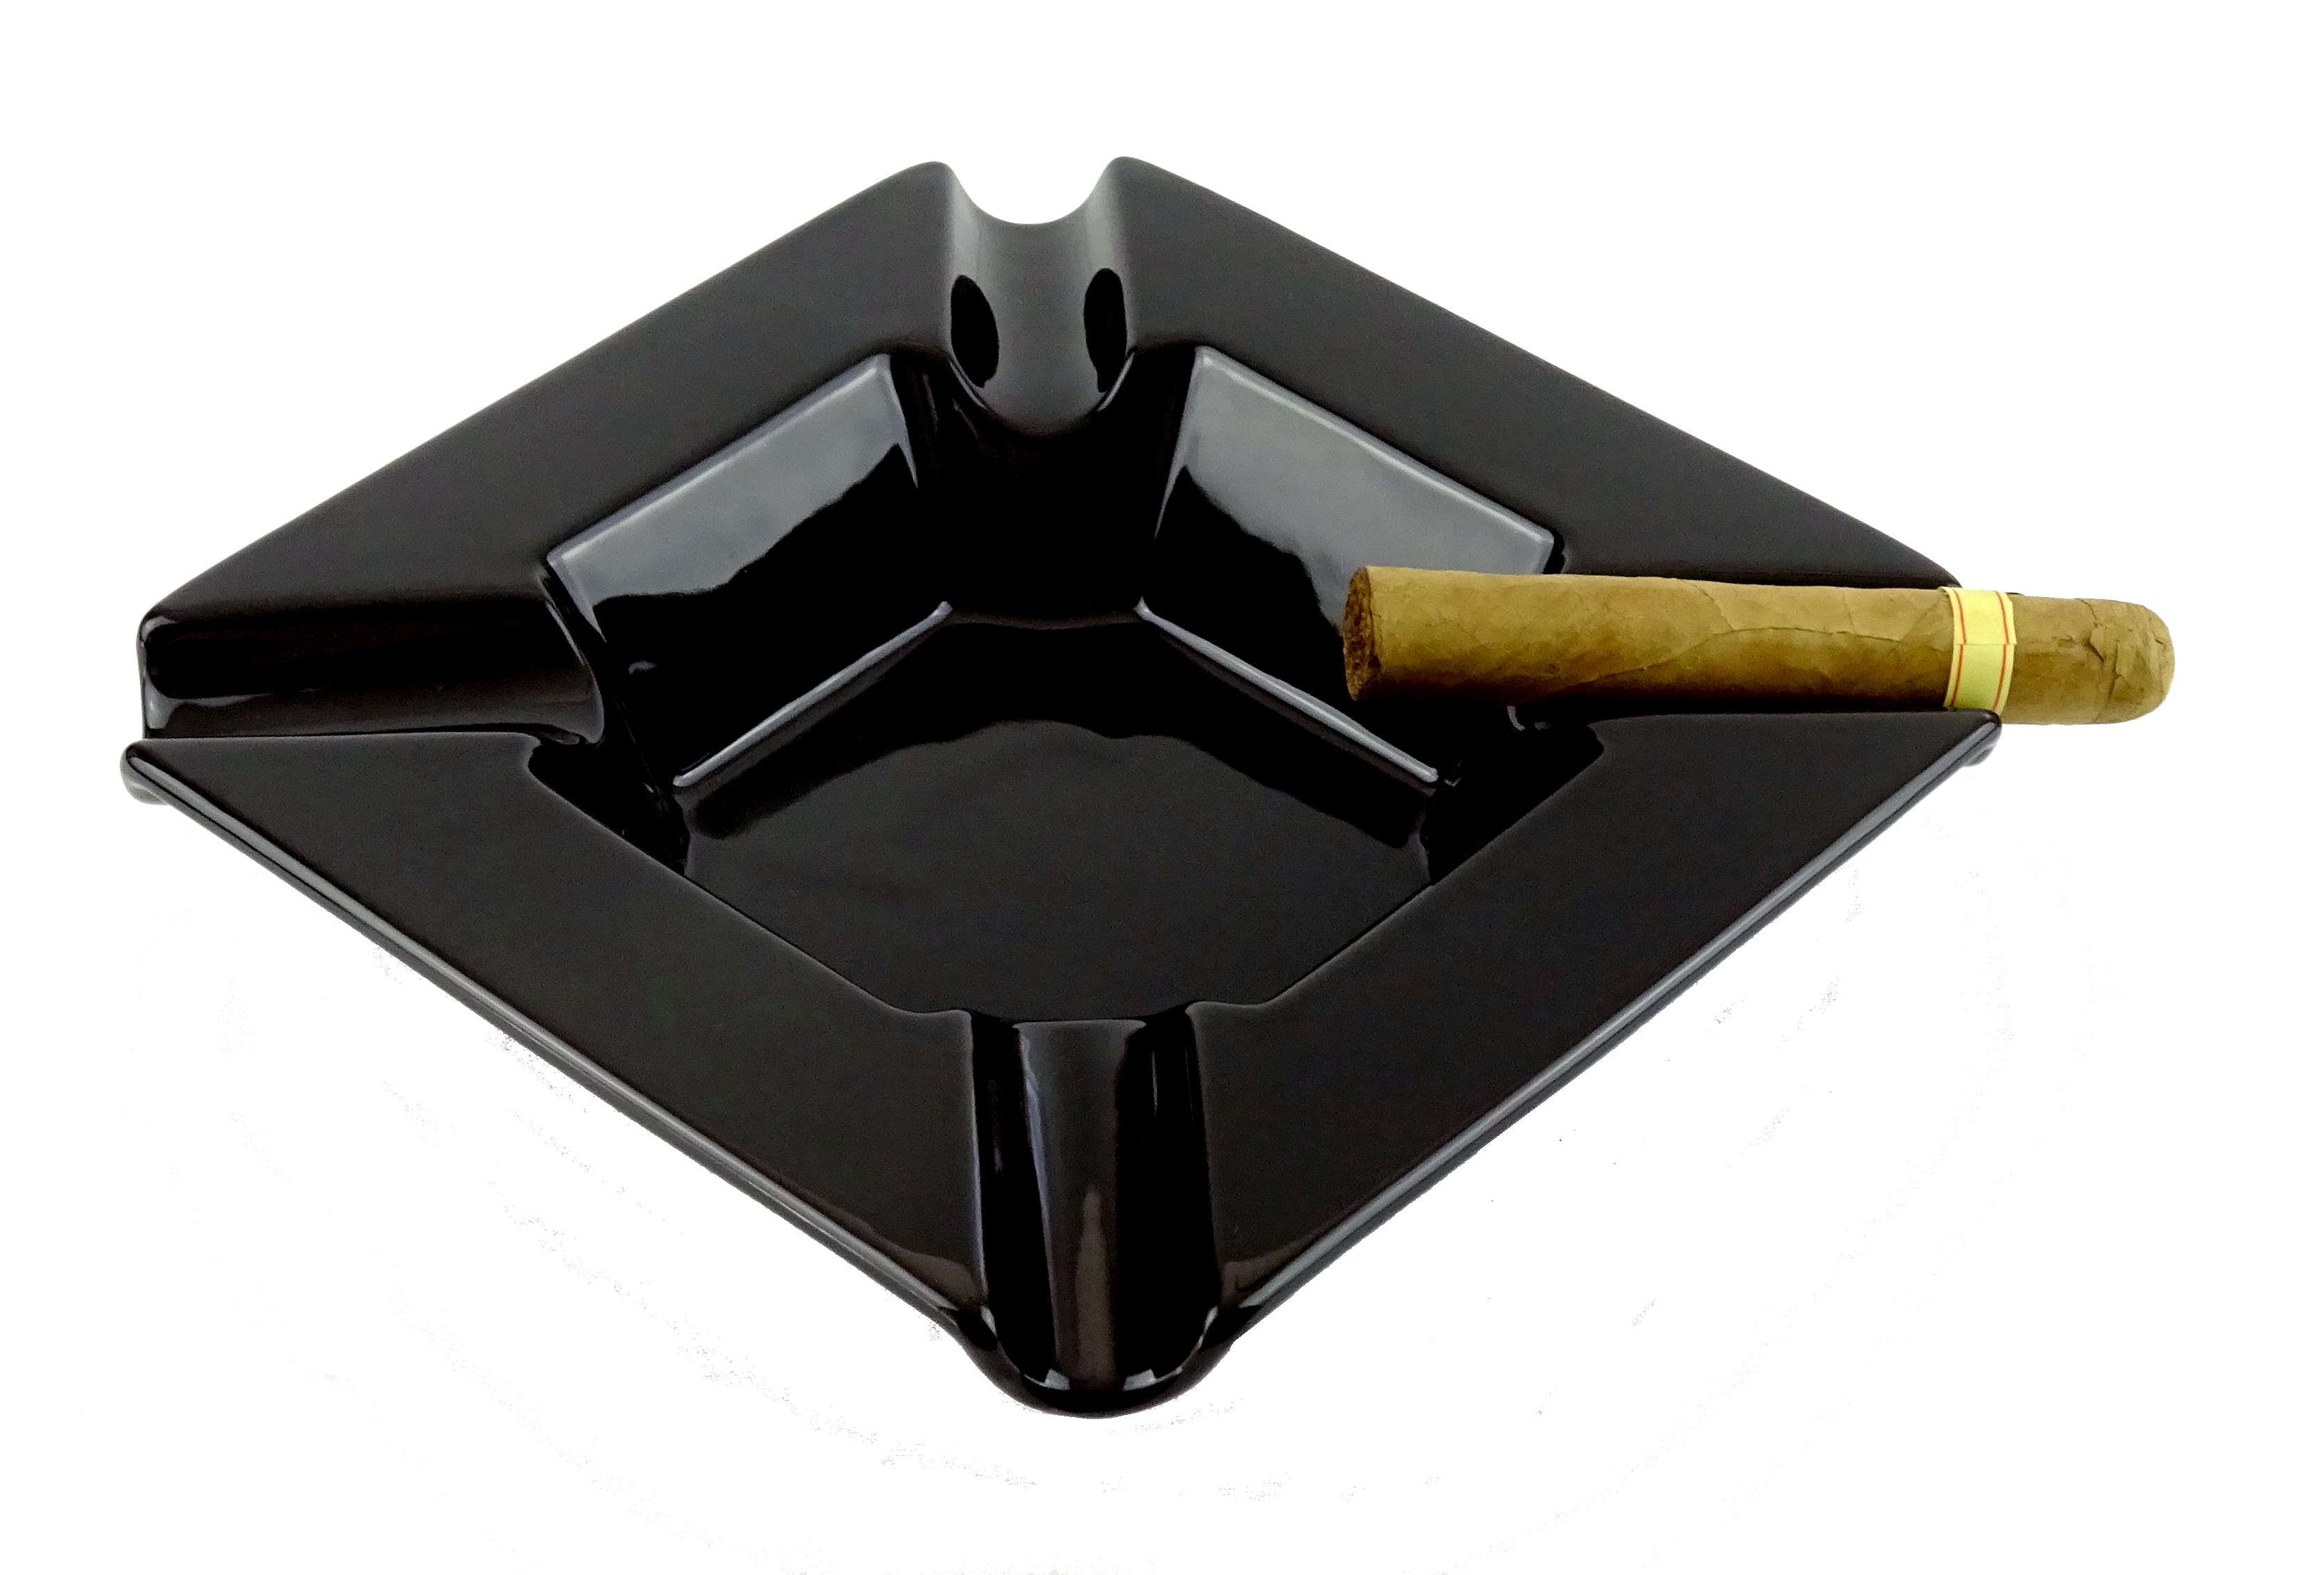 roygra Zigarrenaschenbecher Outdoor-Keramik-Aschenbecher Zigarren